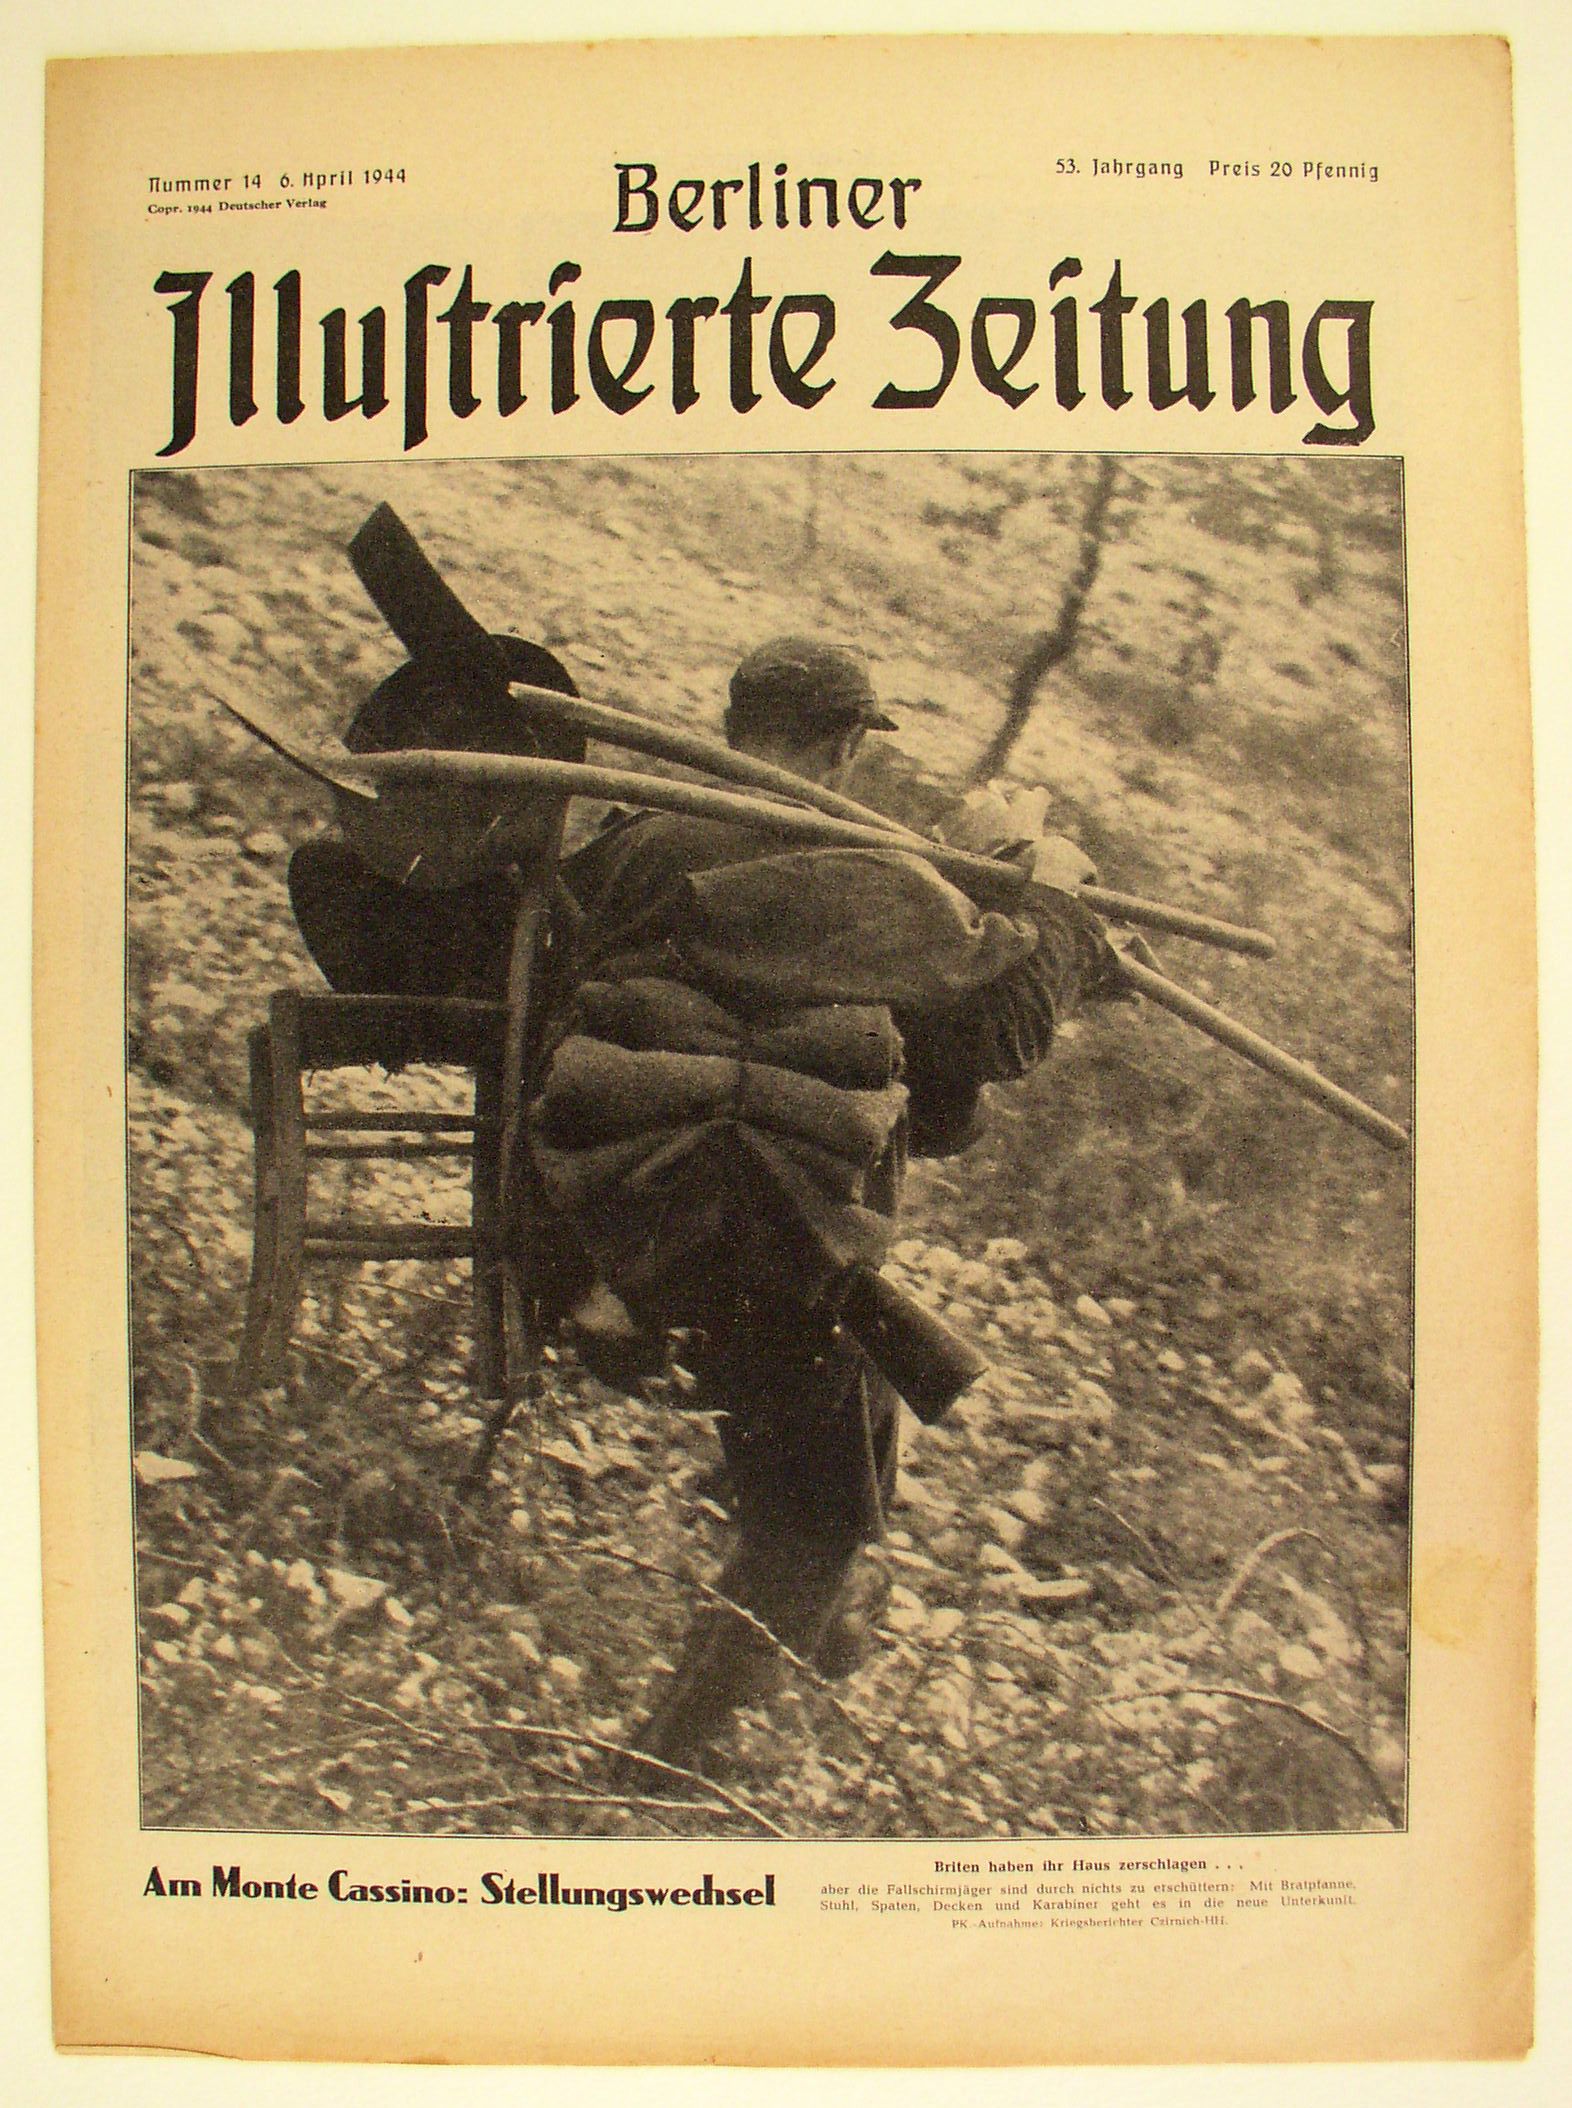 Foto: Titelseite der Wochenzeitschrift "Berliner Illustrierte Zeitung" zum Kampf am Monte Cassino, 1944